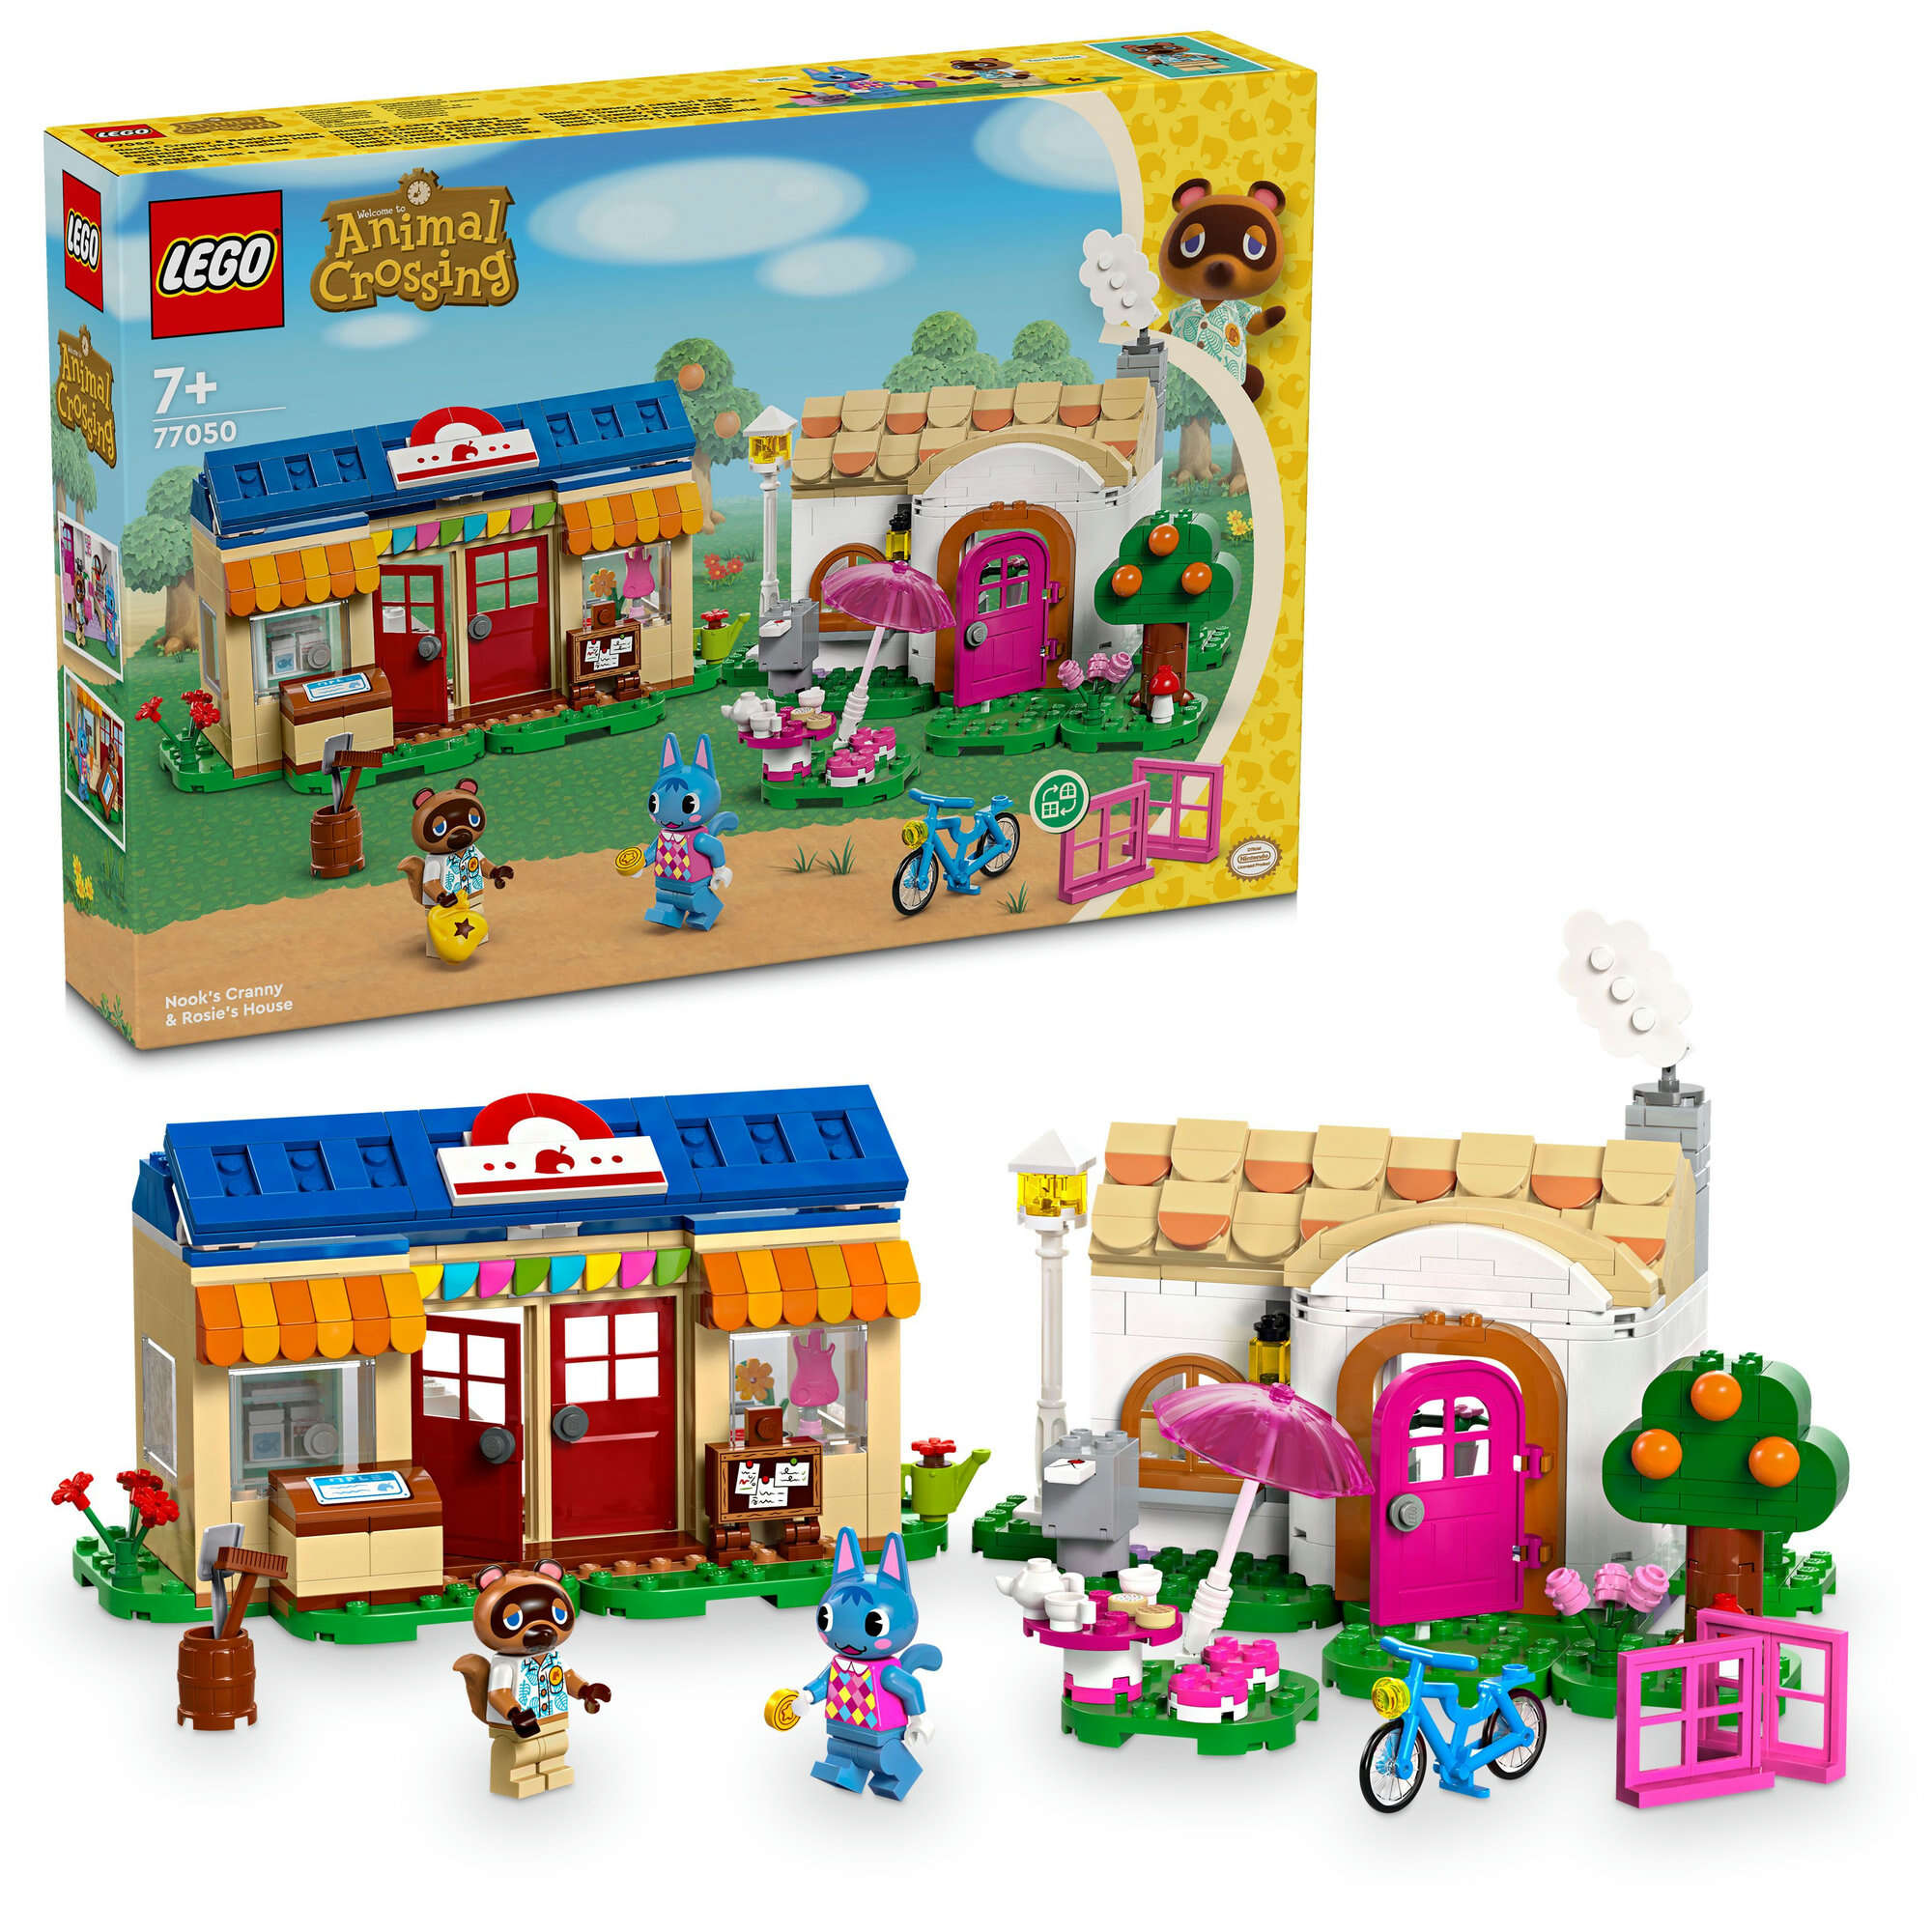 LEGO 77050 Animal Crossing Nooks Laden und Sophies Haus, 2 Minifiguren, 2 Häuser